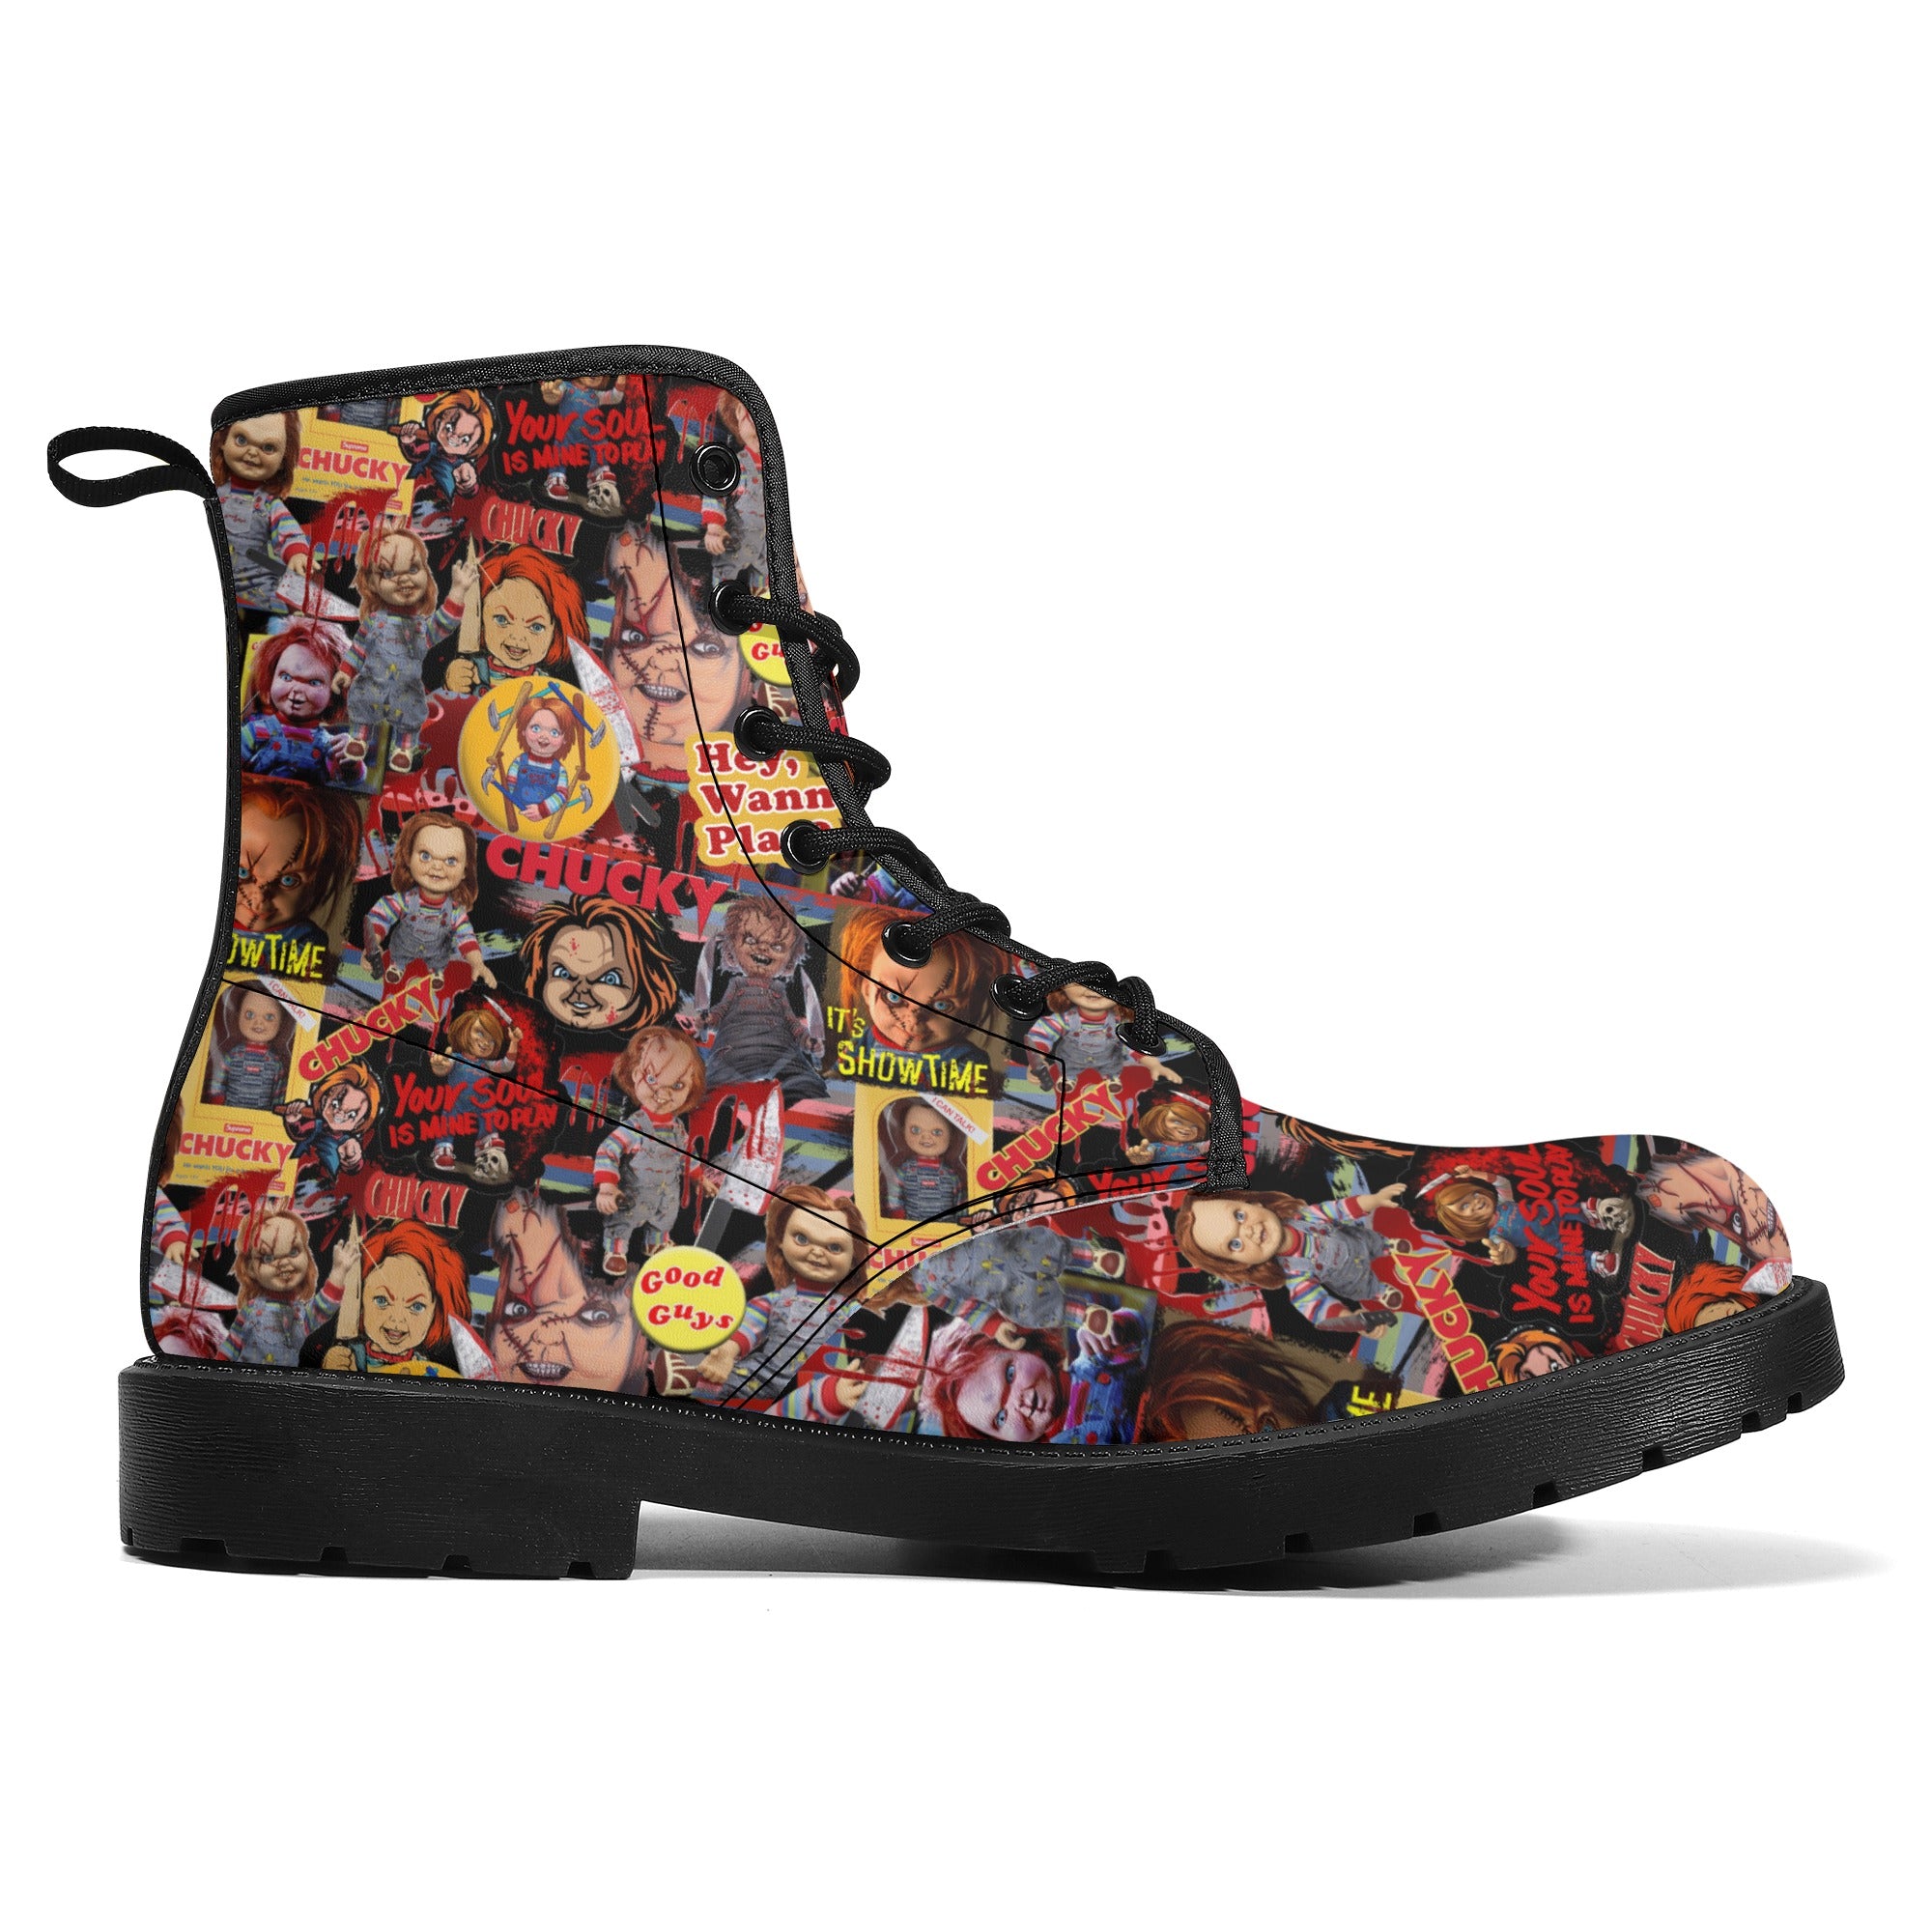 Chucky Wanna PLay Leather Boots spookydoll